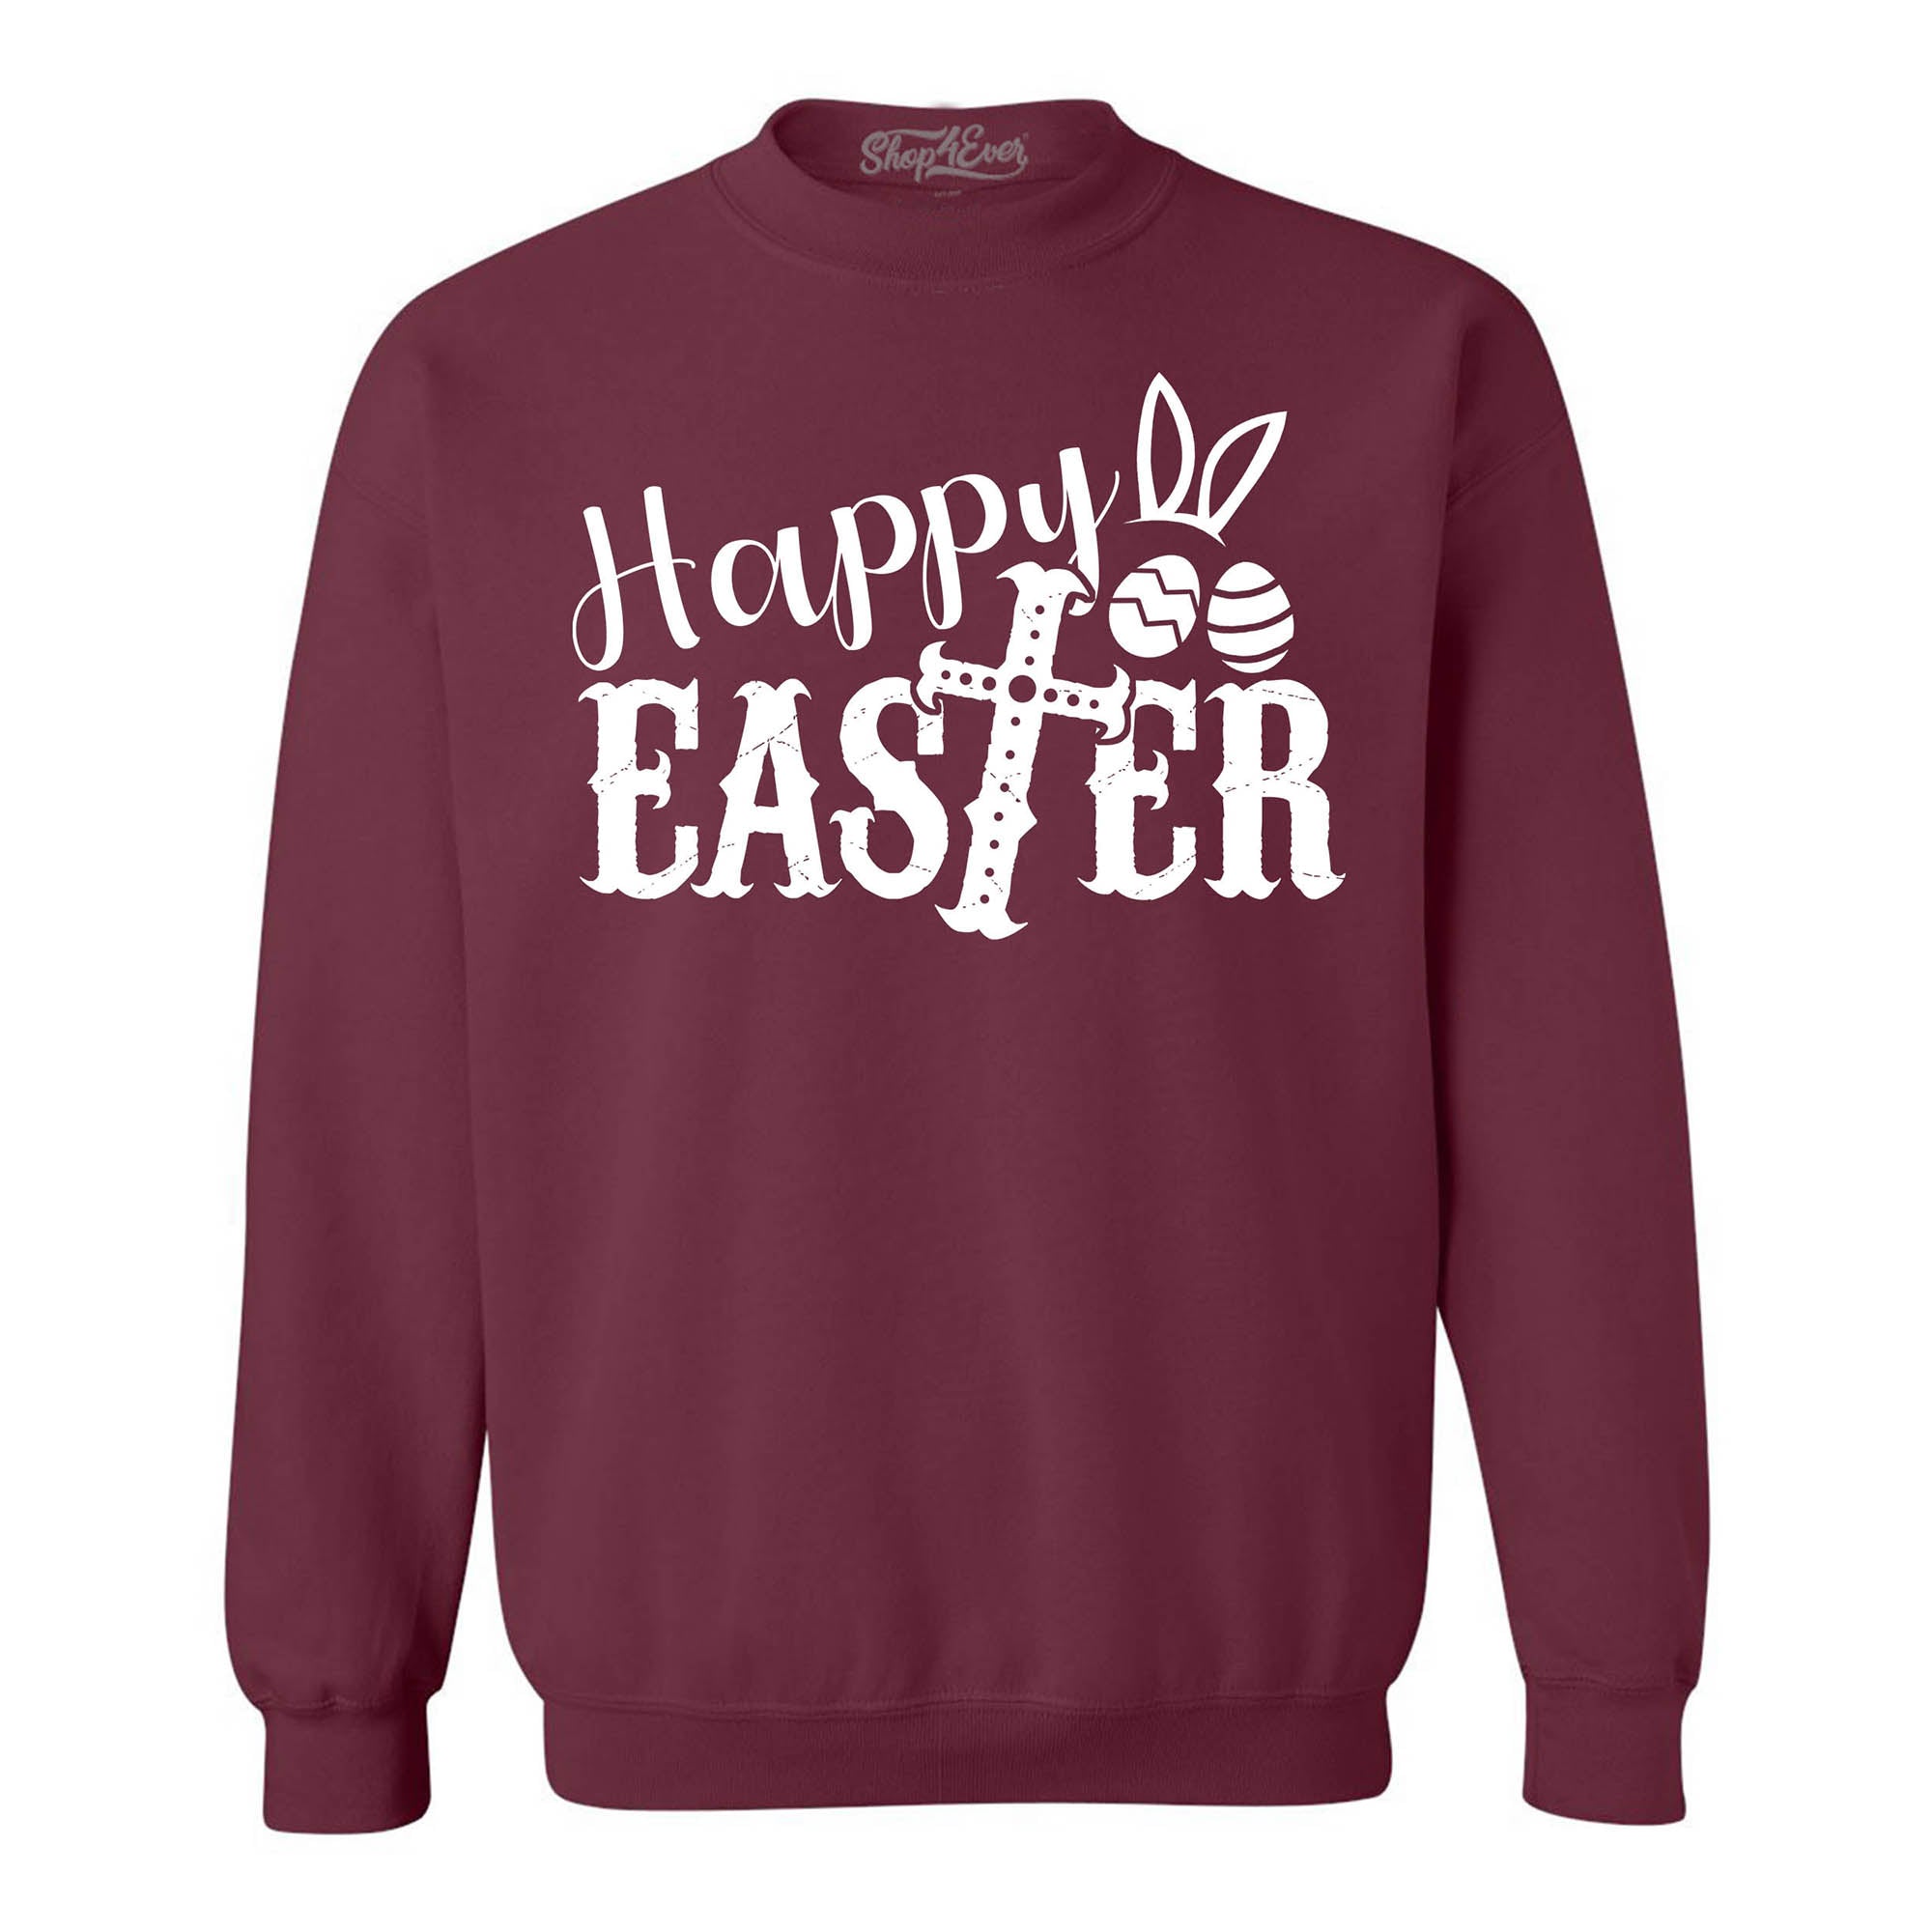 Happy Easter with Cross Crewneck Sweatshirts